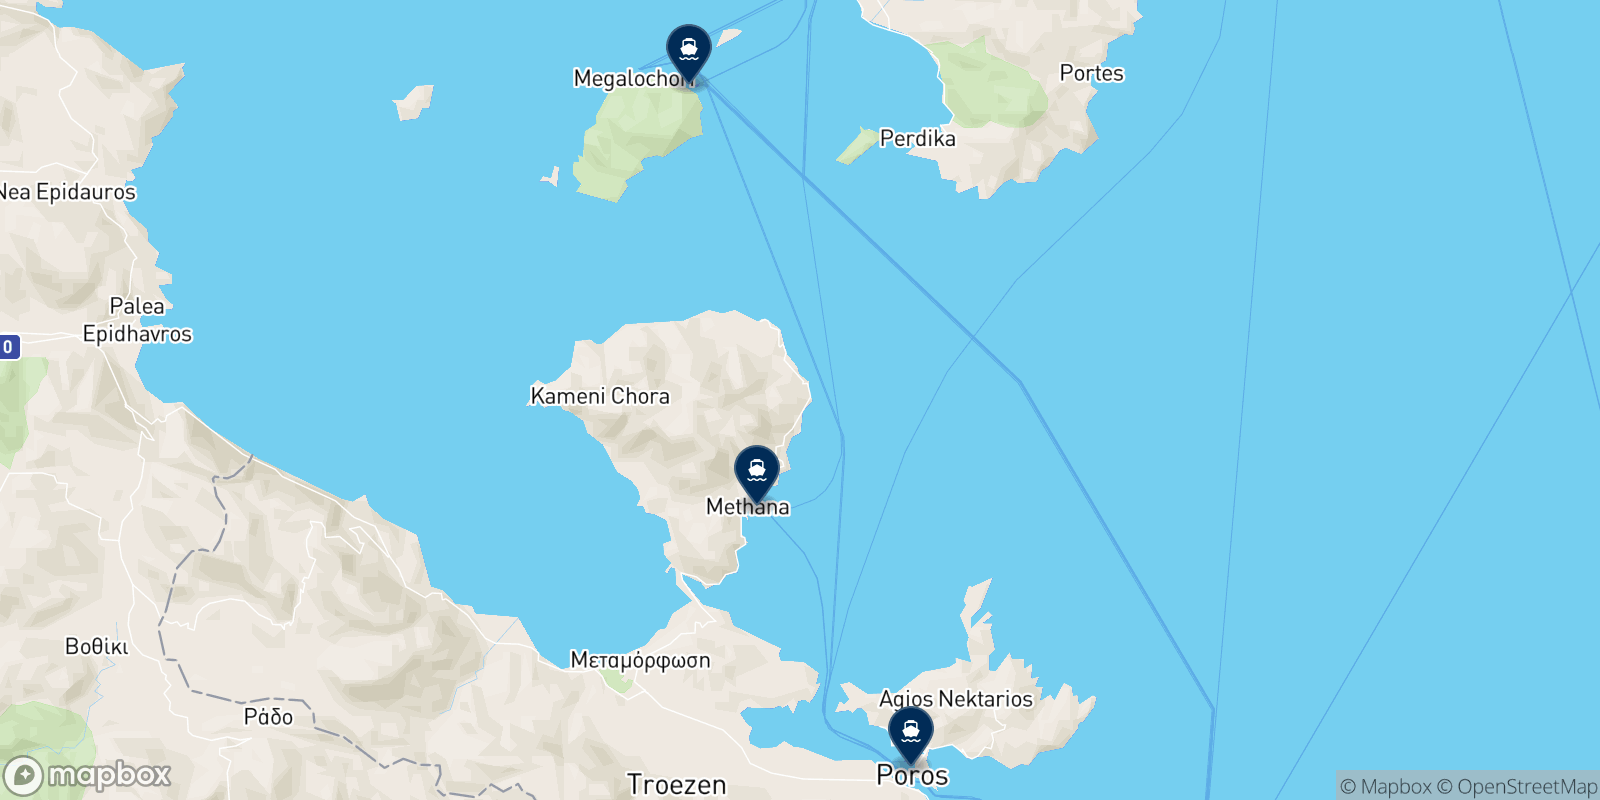 Mappa delle destinazioni Saronic Ferries